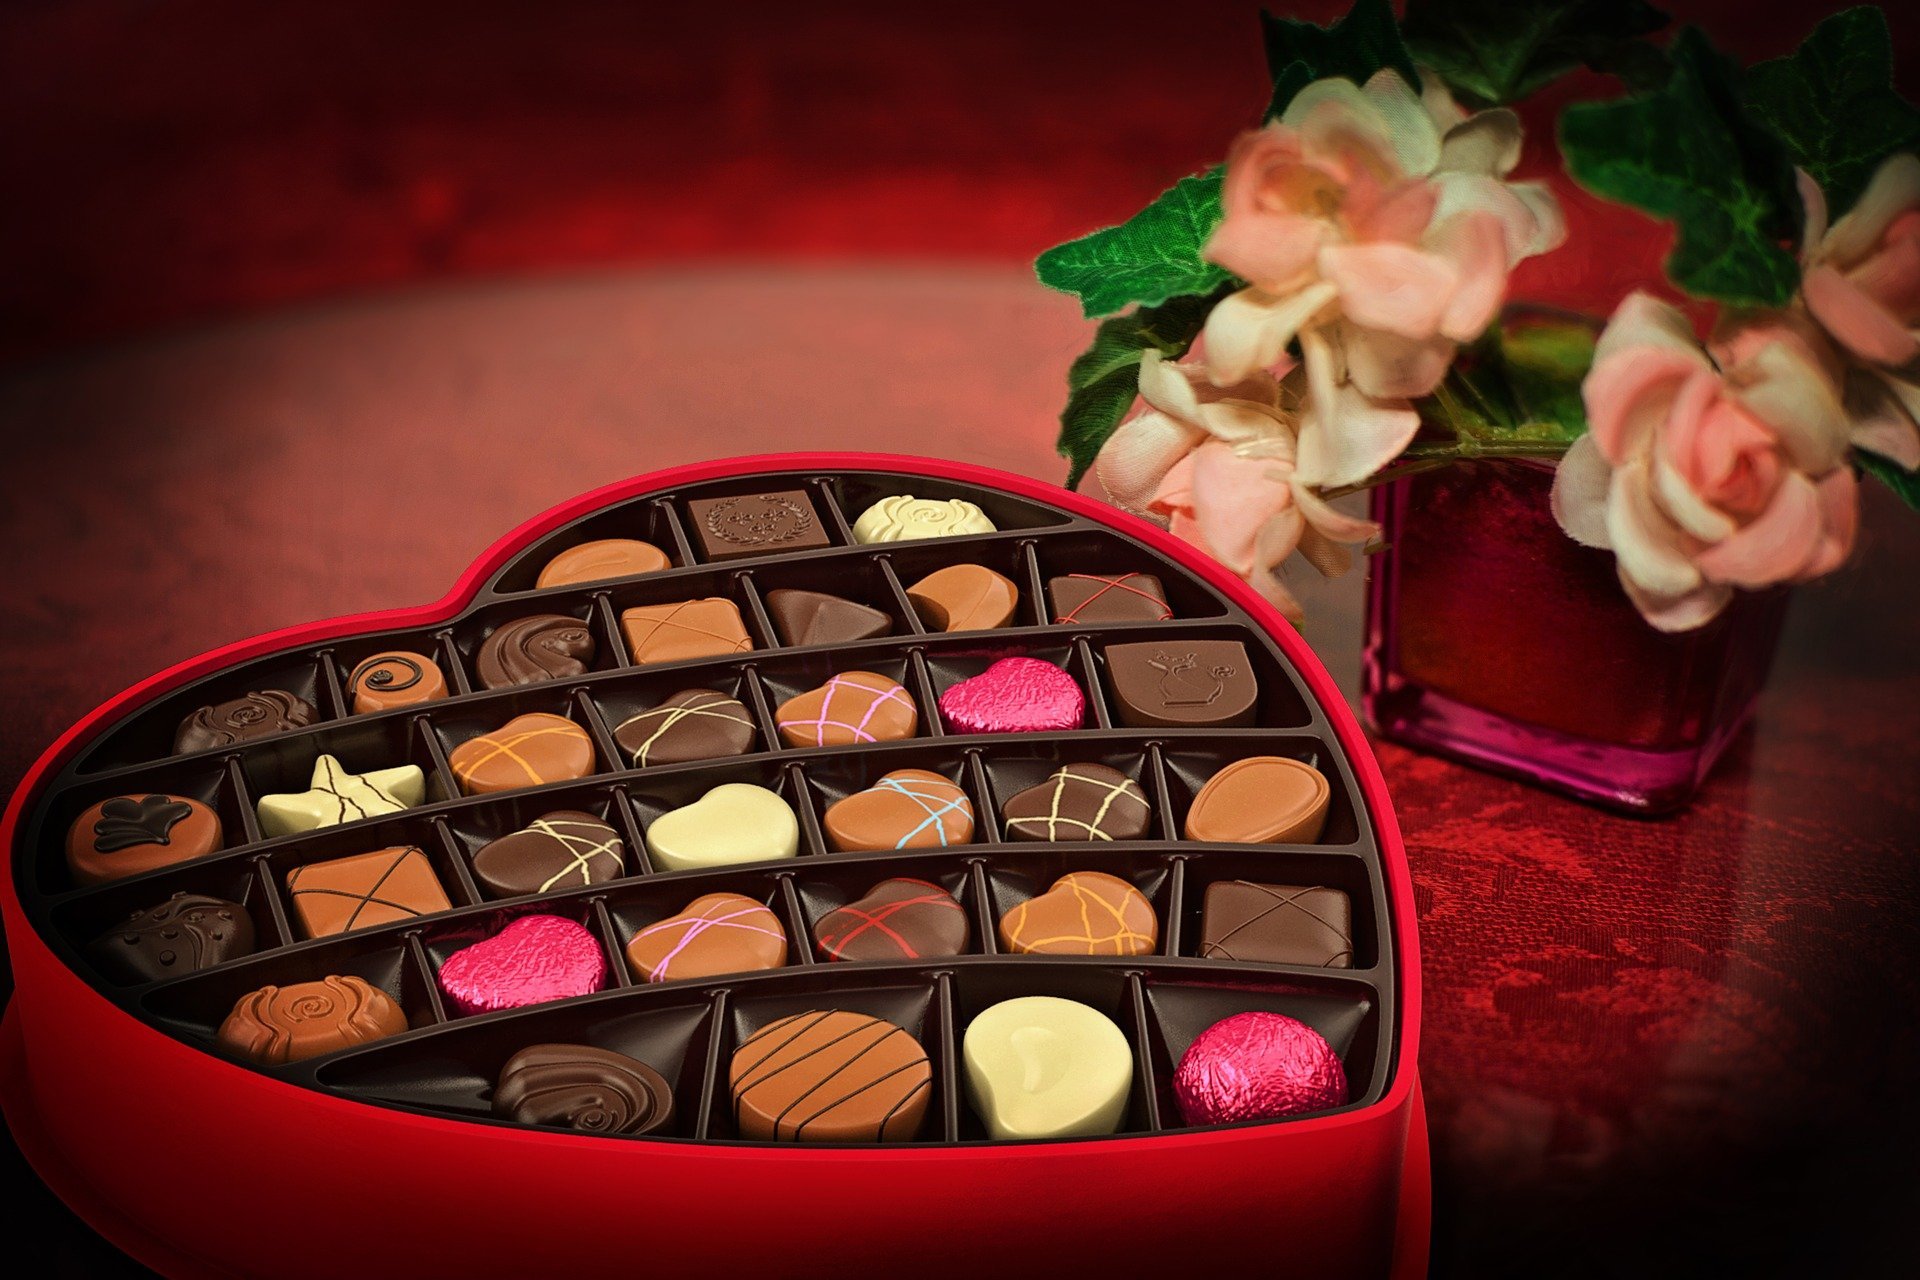 Walentynki - Święto Zakochanych 14 lutego pixabay